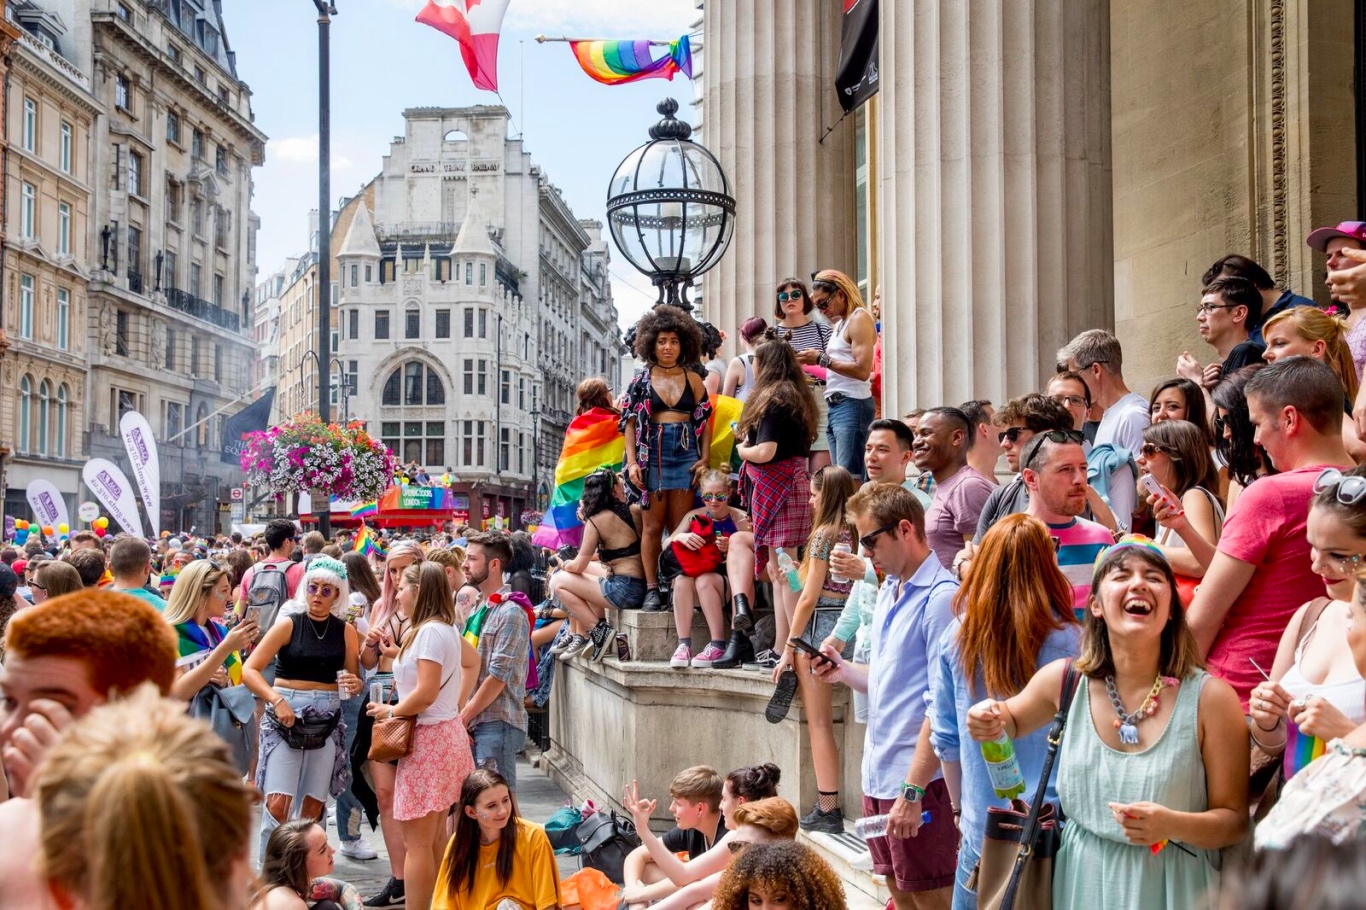 Pride in London 2018